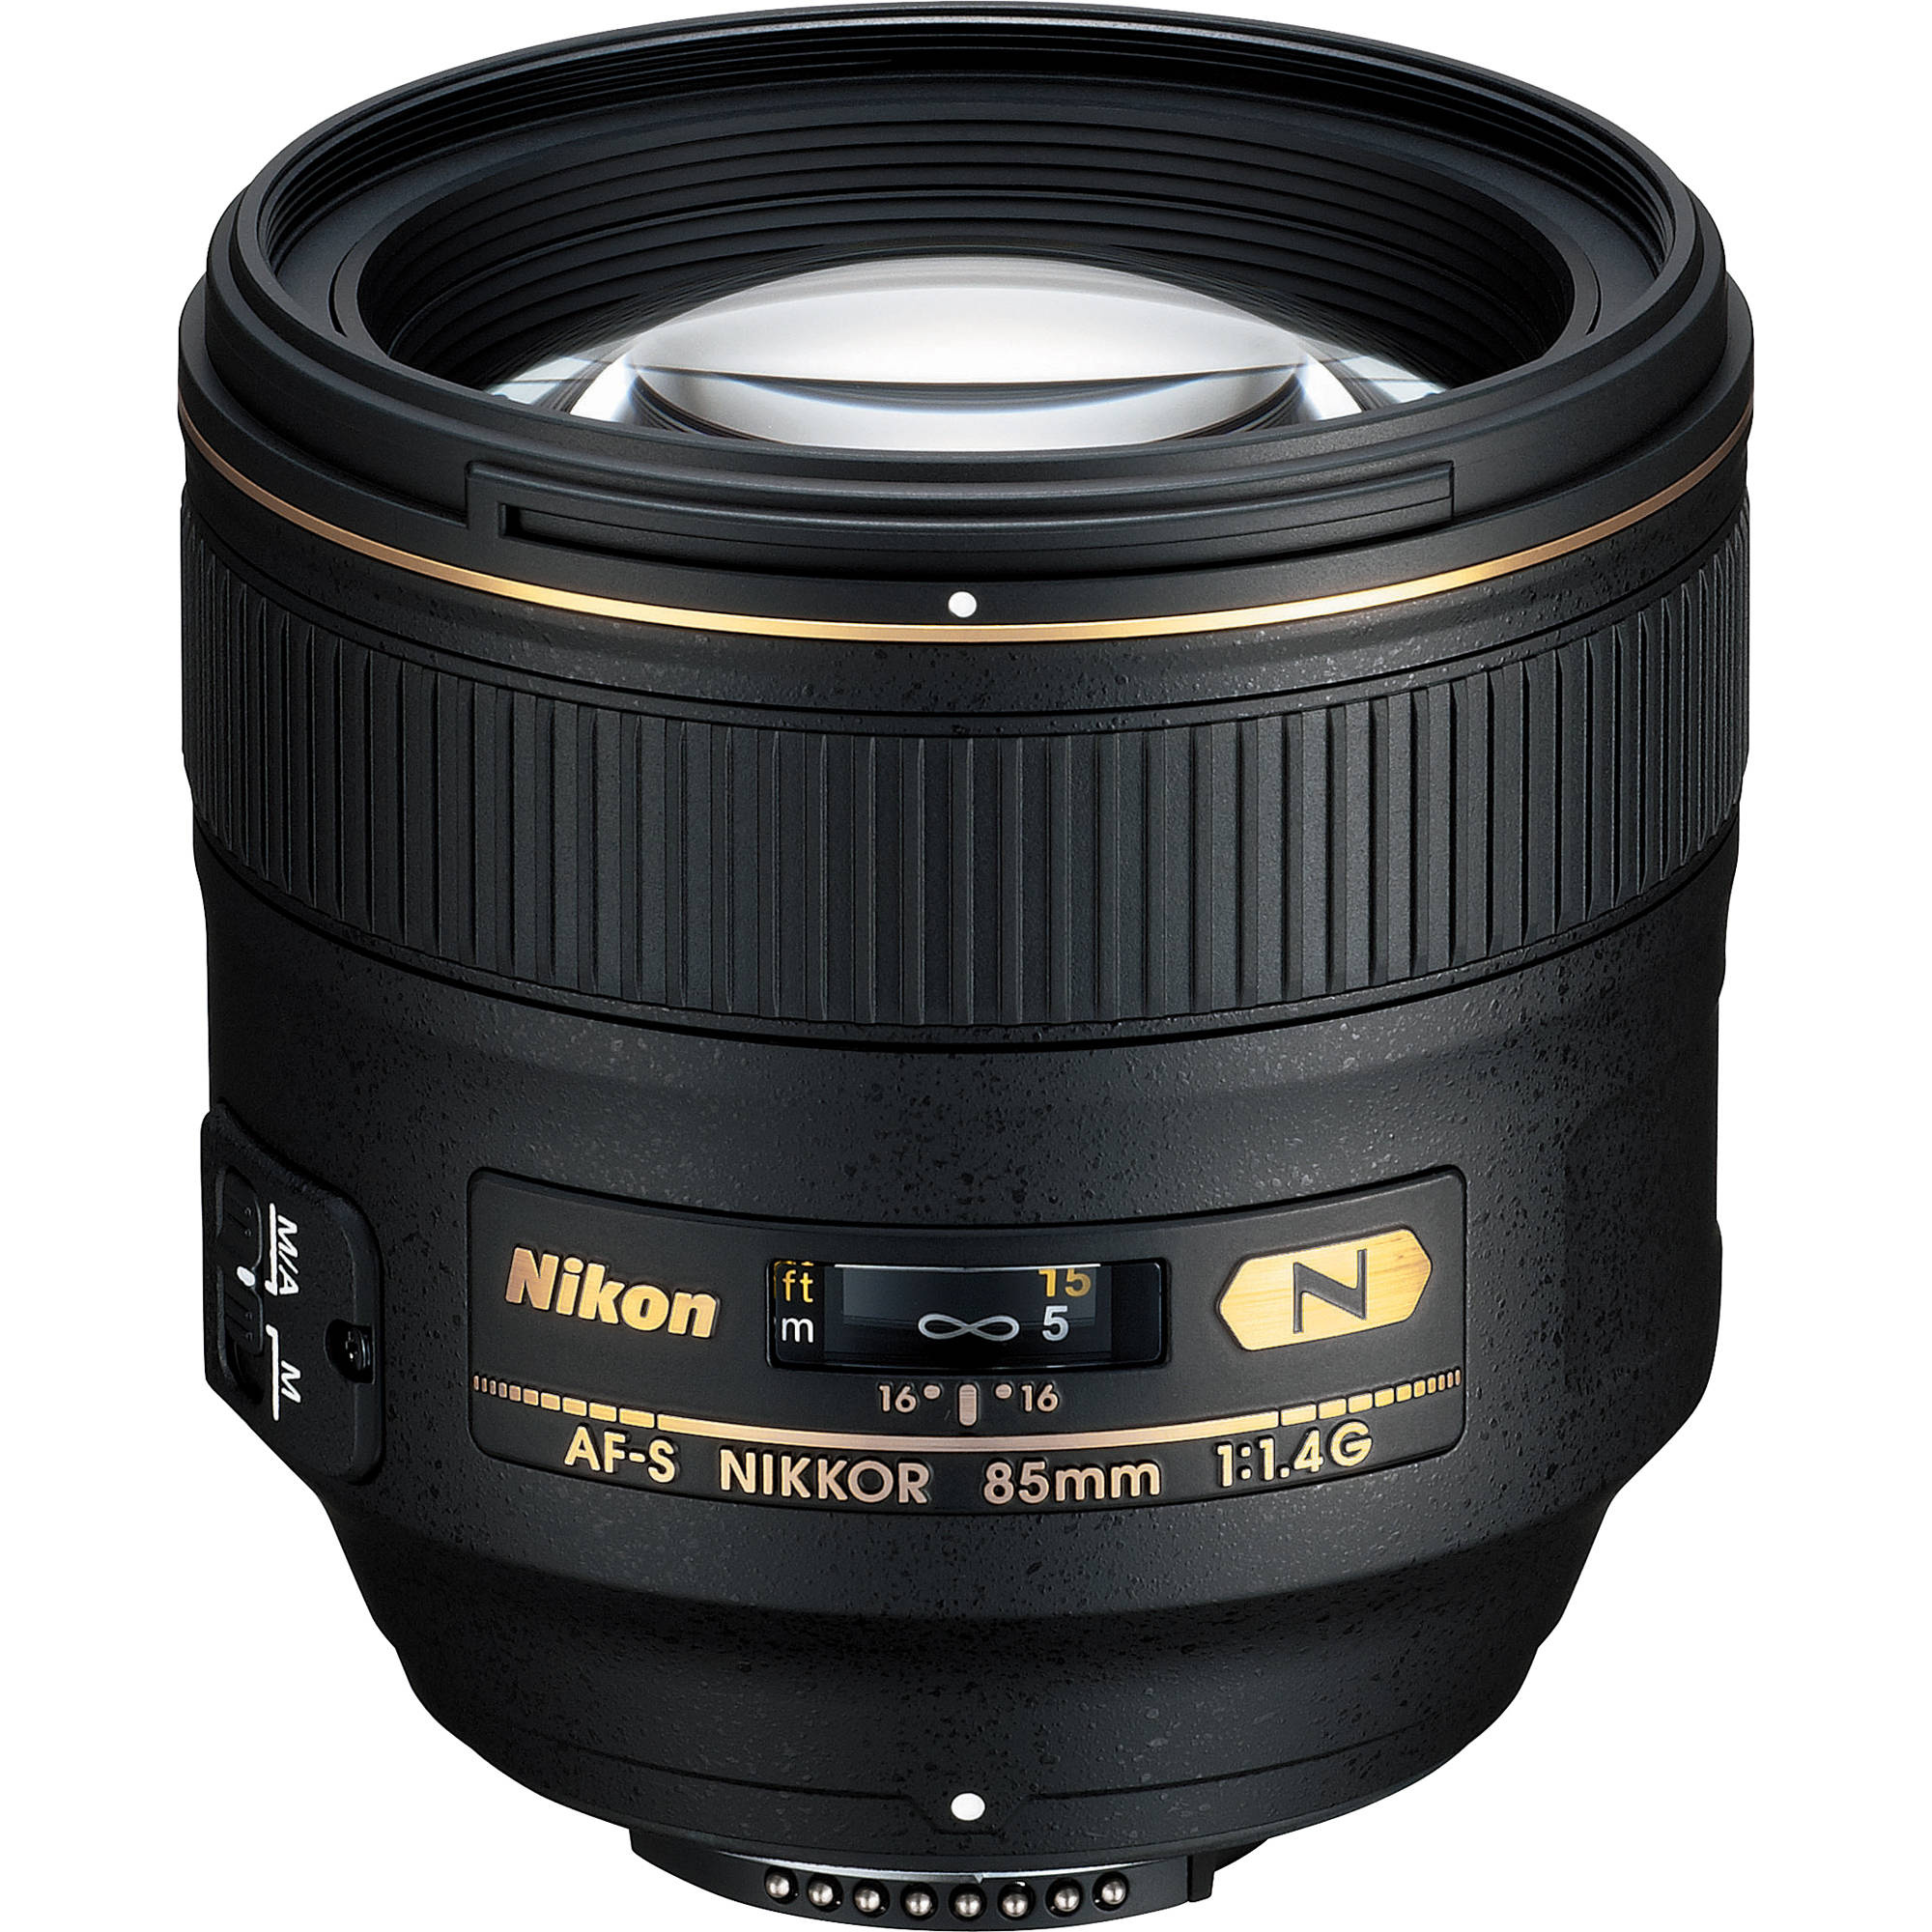 Nikon Telephoto AF-S 85mm f1.4G Lens